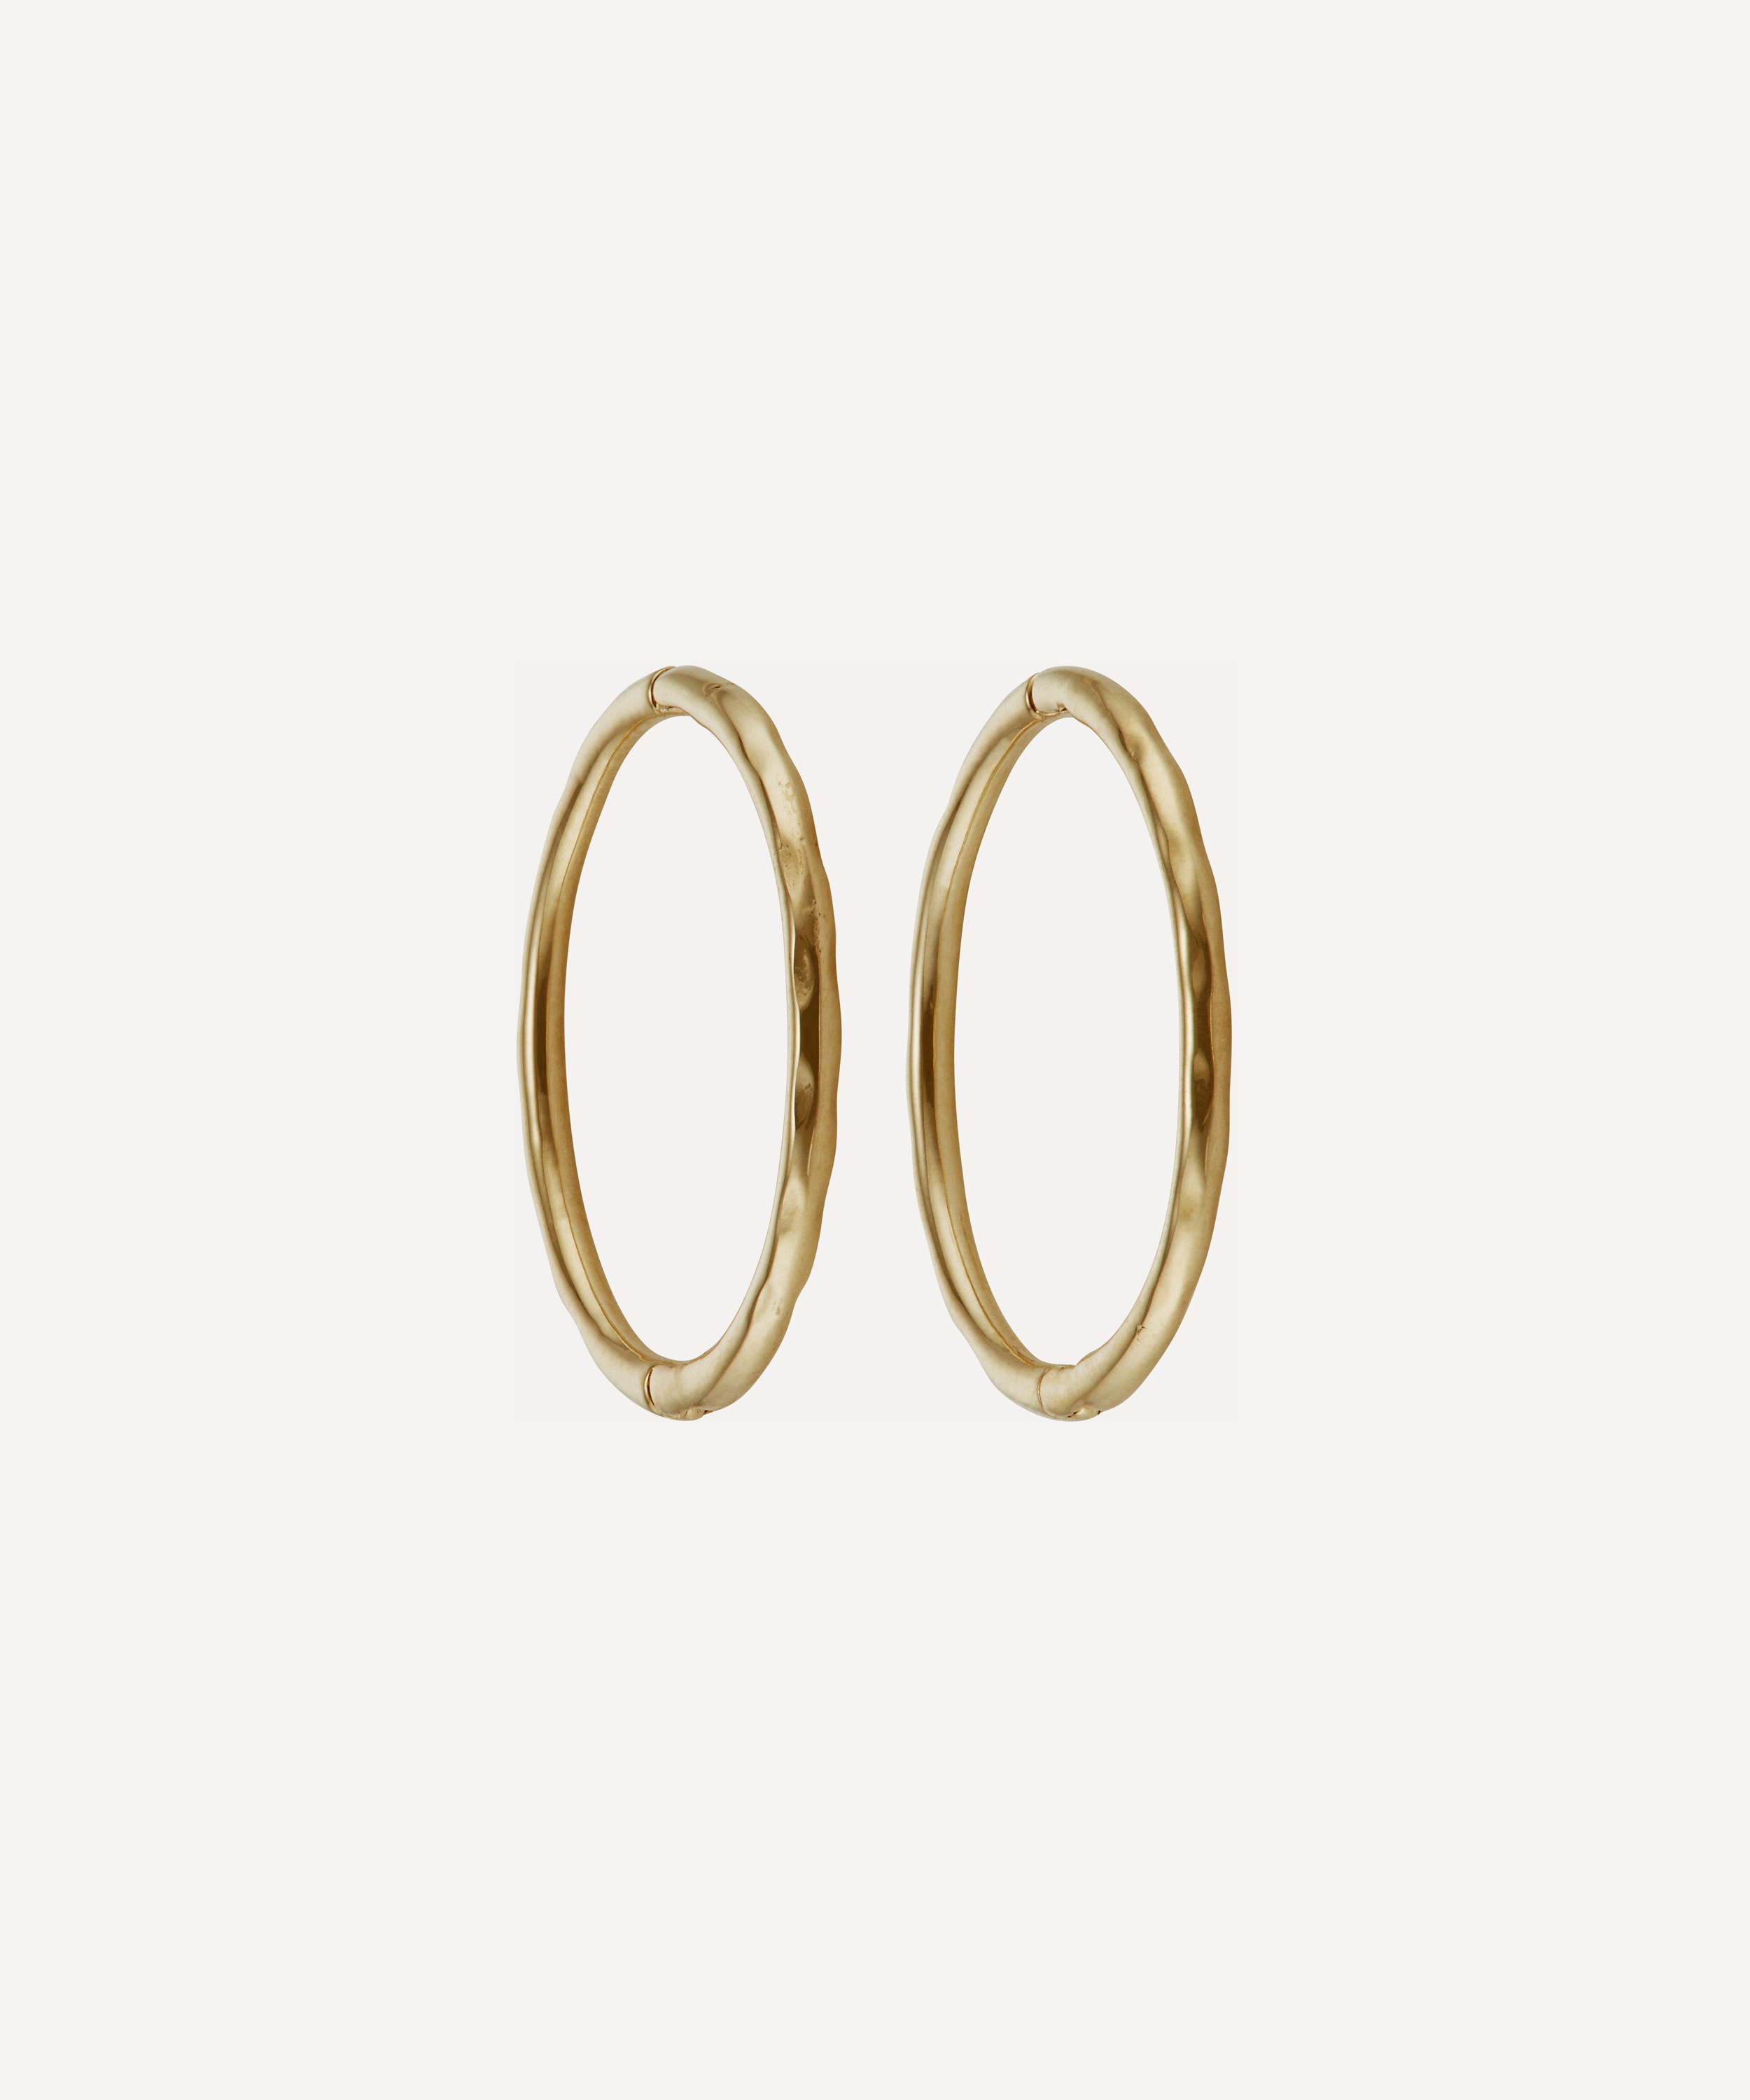 Ellis Mhairi Cameron - 14ct Gold LI 12mm Hammered Clicker Hoop Earrings